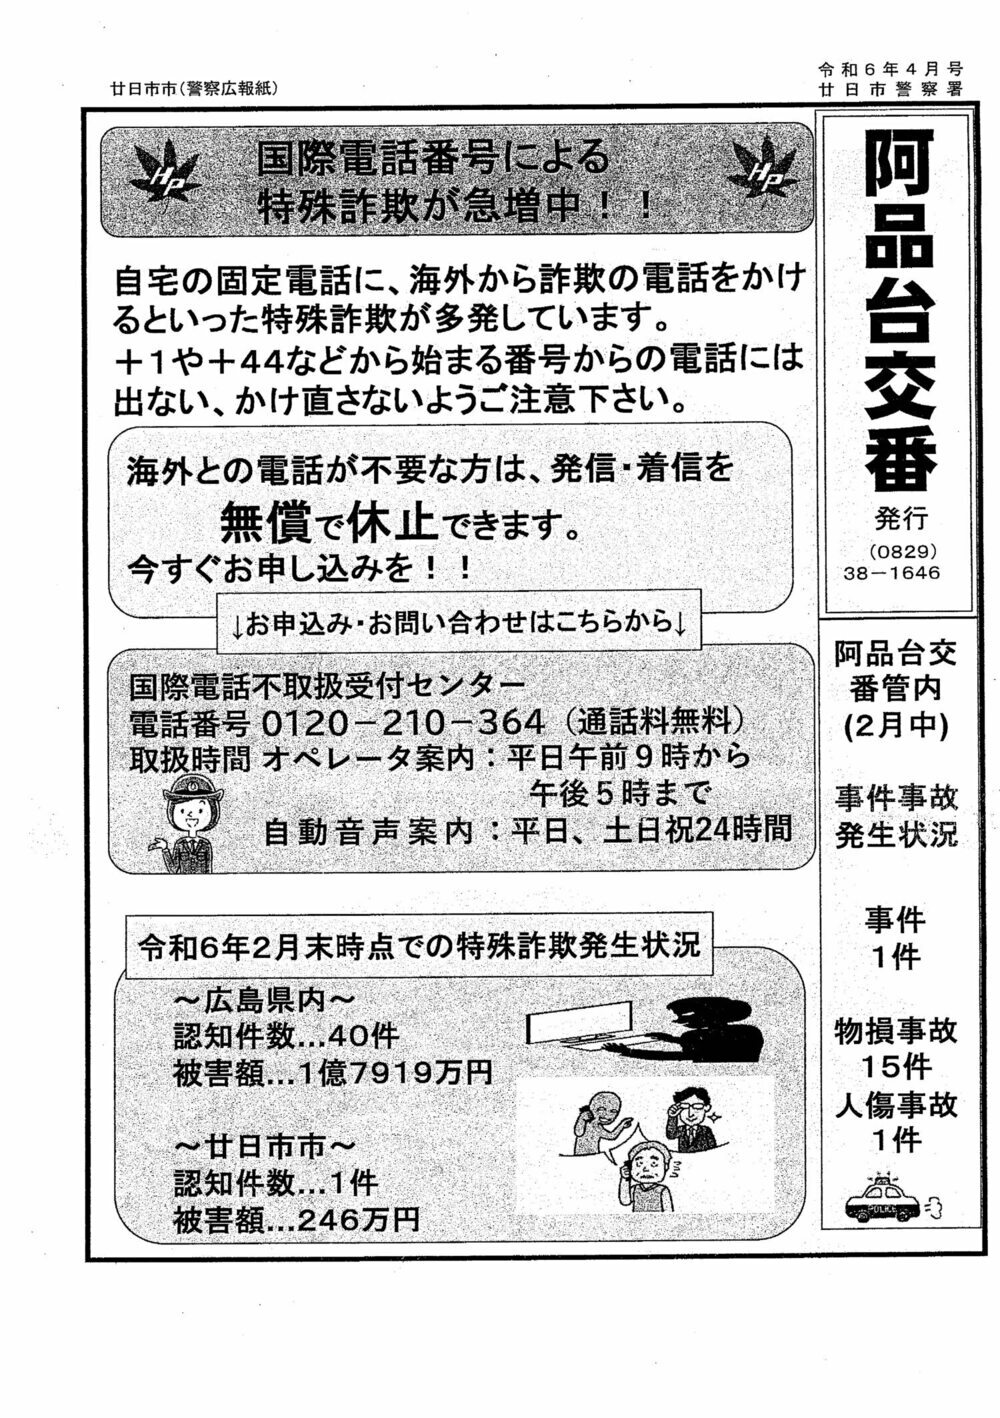 Caixa policial de Ajindai Publicado pela Delegacia de Polícia de Hatsukaichi, edição de outubro de 6